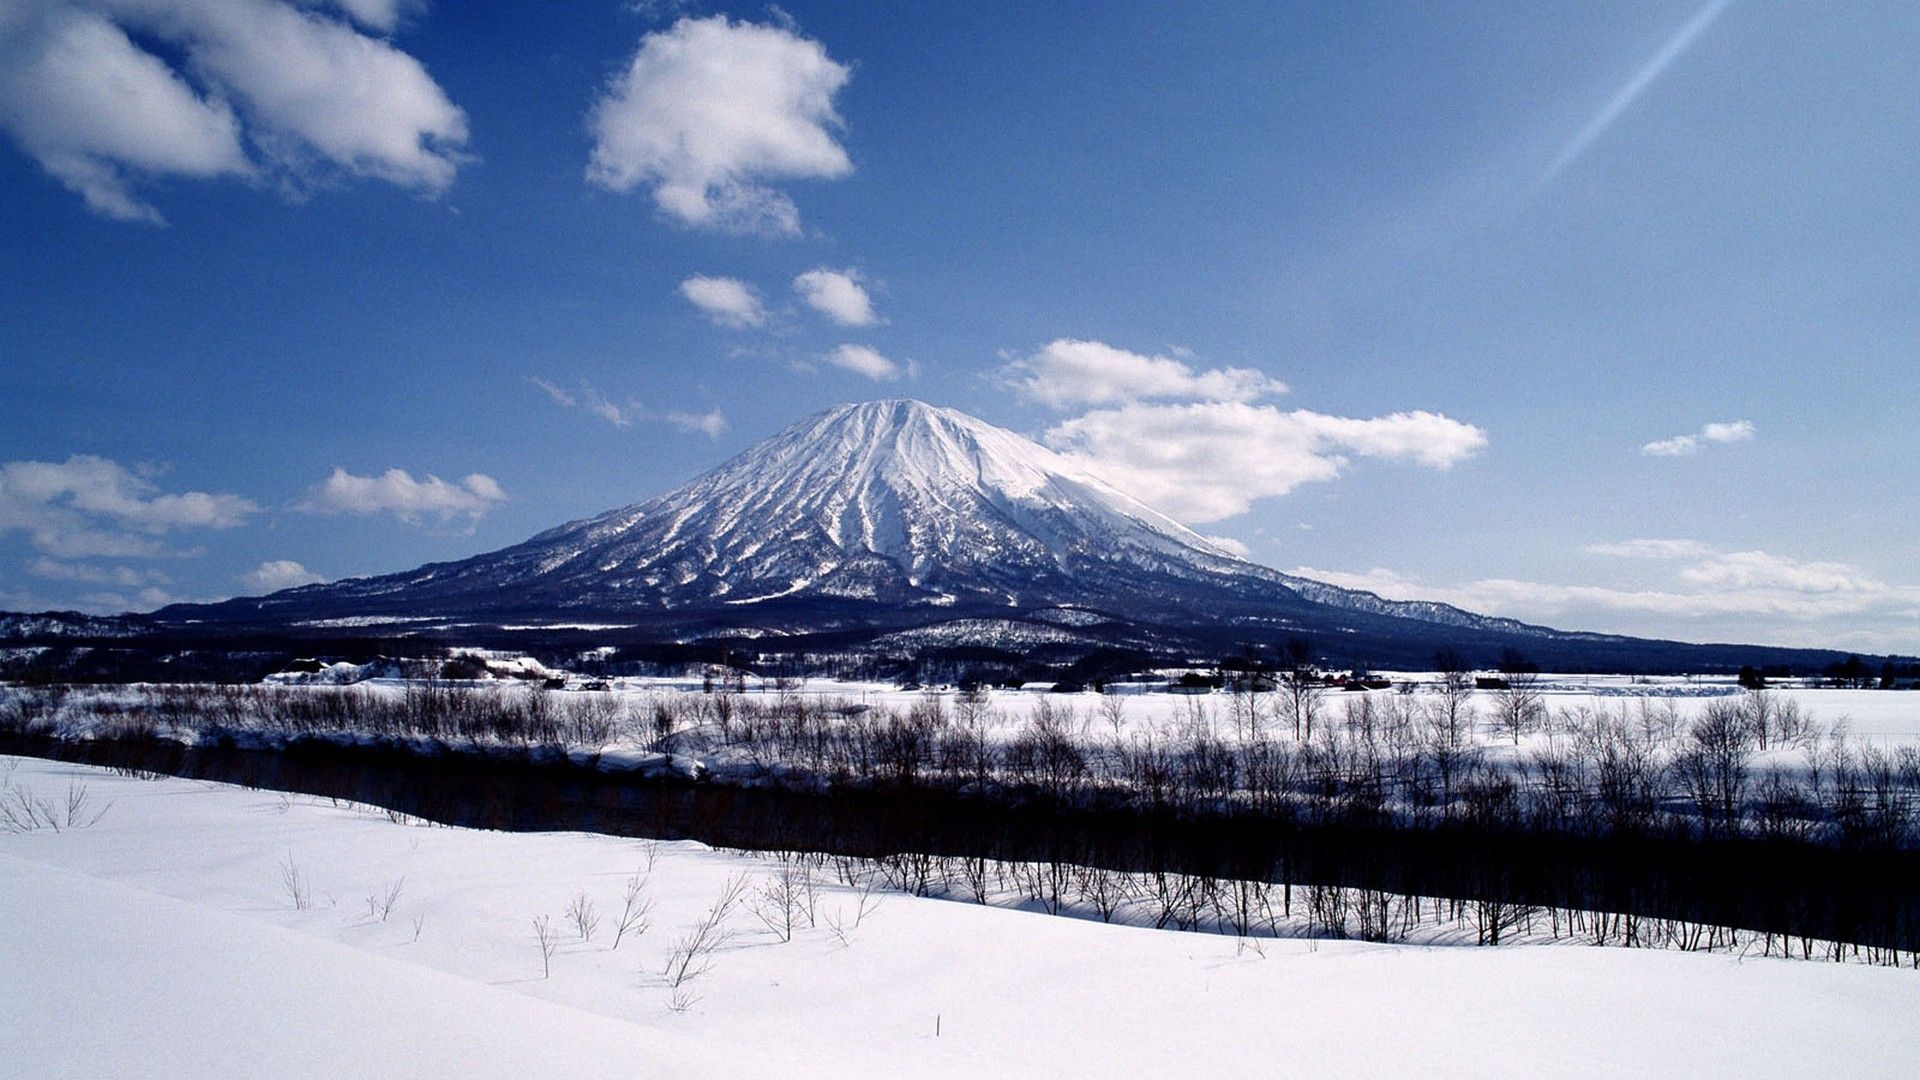 Winter Mt Fuji Wallpaper On